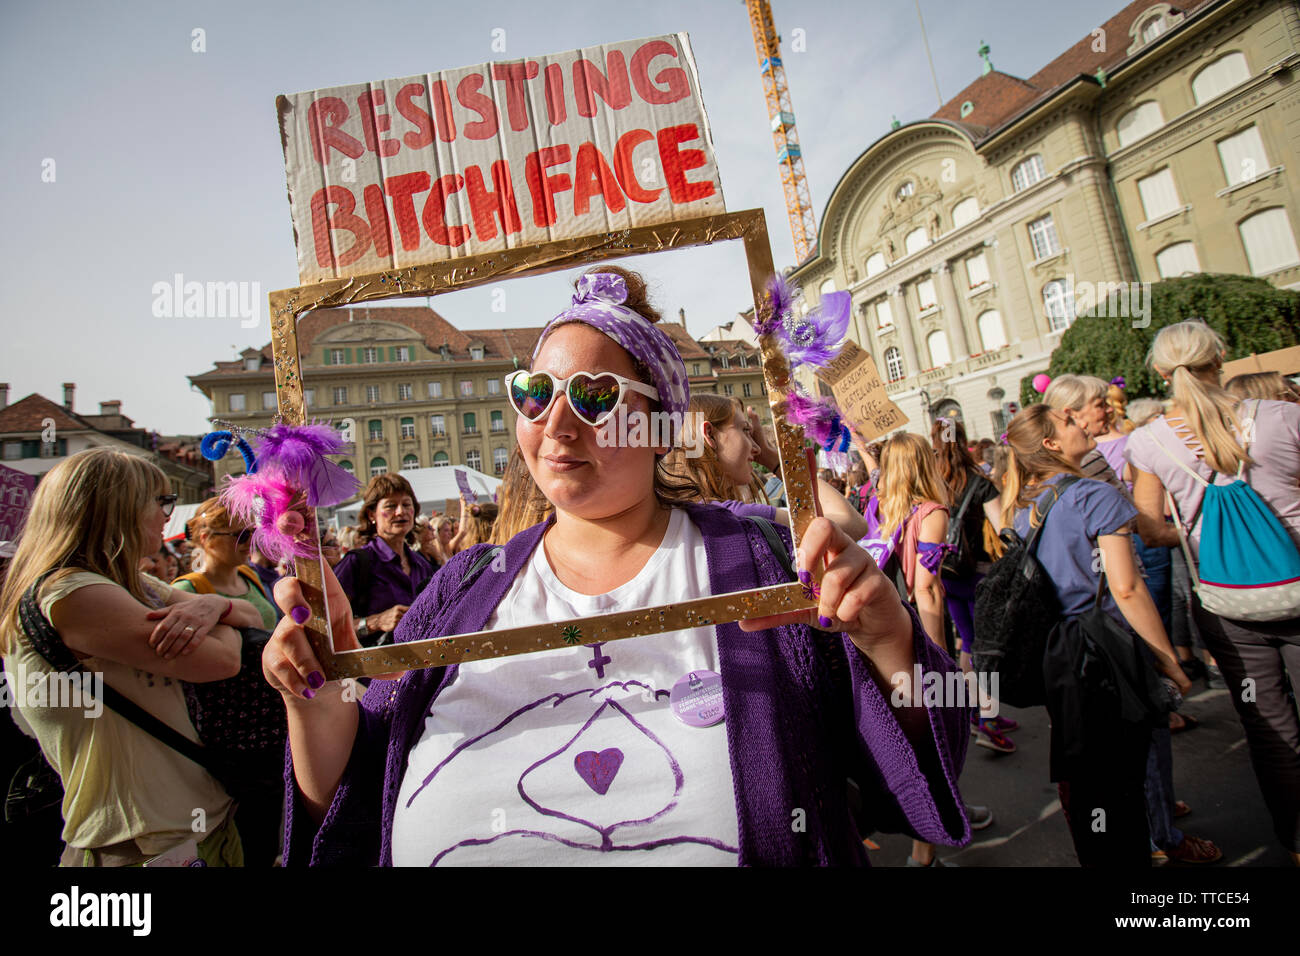 Jasmin (30) depuis Berne habillé en "sisting bitchface'dans une marche pour les droits des femmes en berne. L'Frauenstreik - Femmes - Grève a un nombre record de femmes à la rue dans toutes les grandes villes de Suisse. Dans la capitale Berne, plus de 40.000 ont défilé dans la ville jusqu'à se battre pour l'égalité des sexes. Banque D'Images